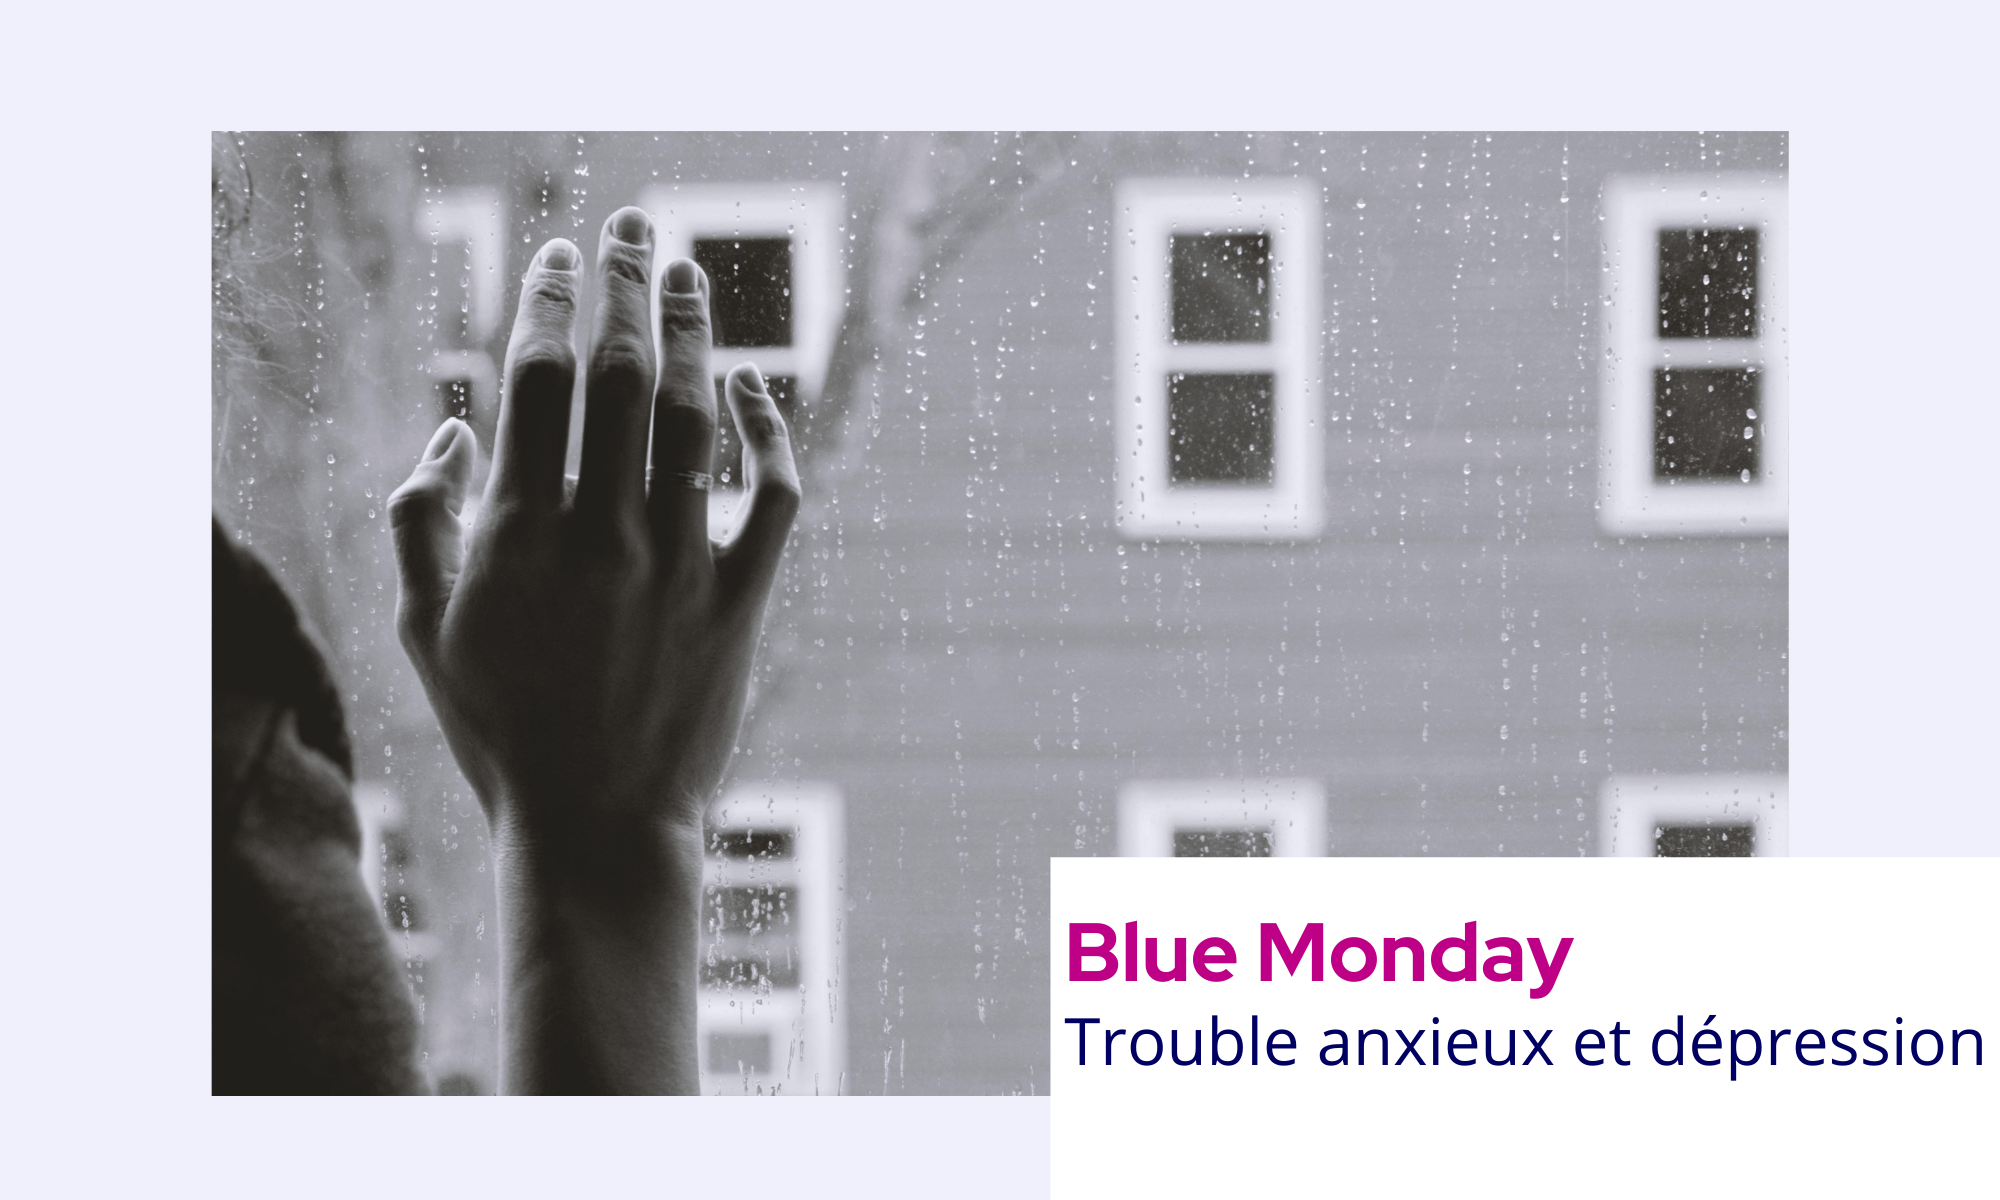 Le "Blue Monday" : prendre soin de sa santé mentale